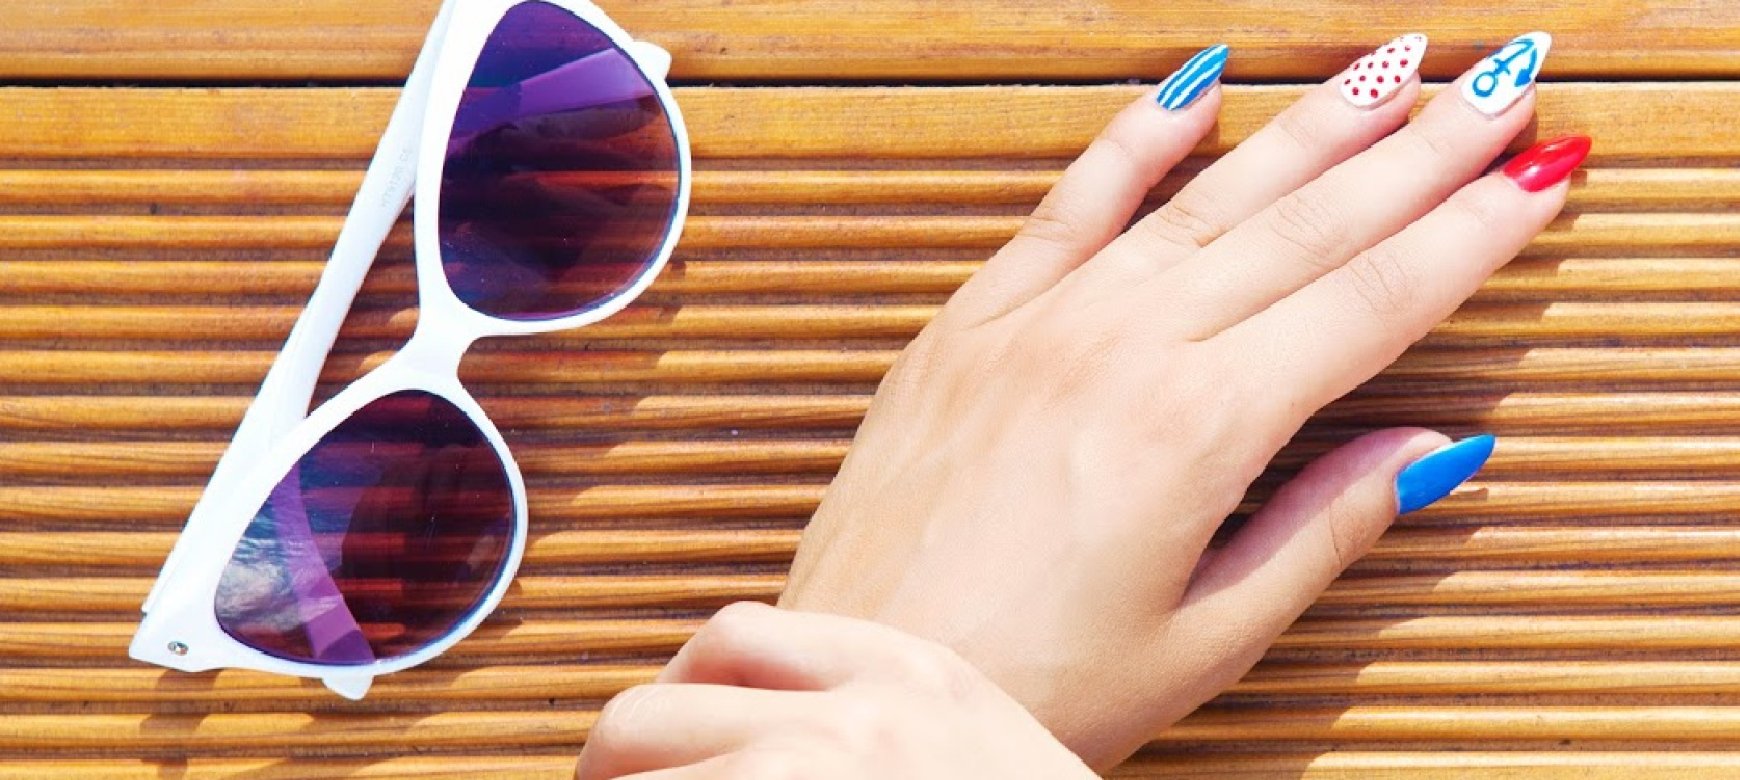 S for Summer: Die sommerlichen Nagelfarben und -designs, die Sie lieben werden